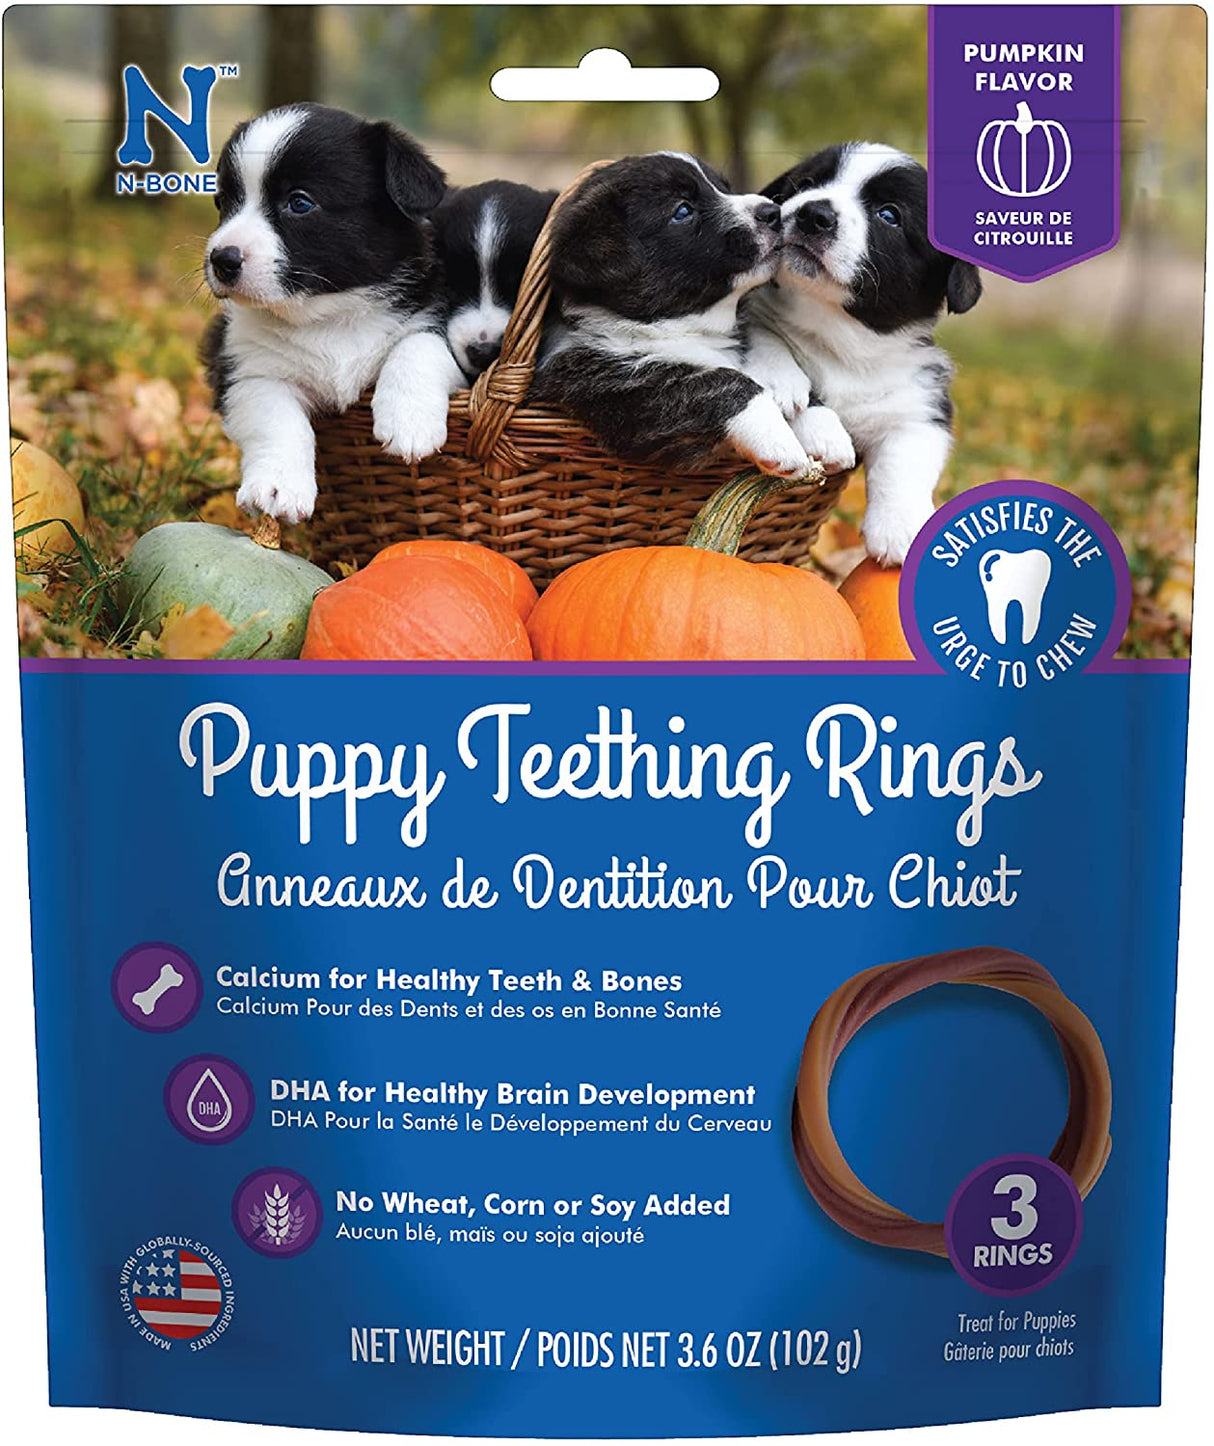 36 count (12 x 3 ct) N-Bone Puppy Teething Ring Pumpkin